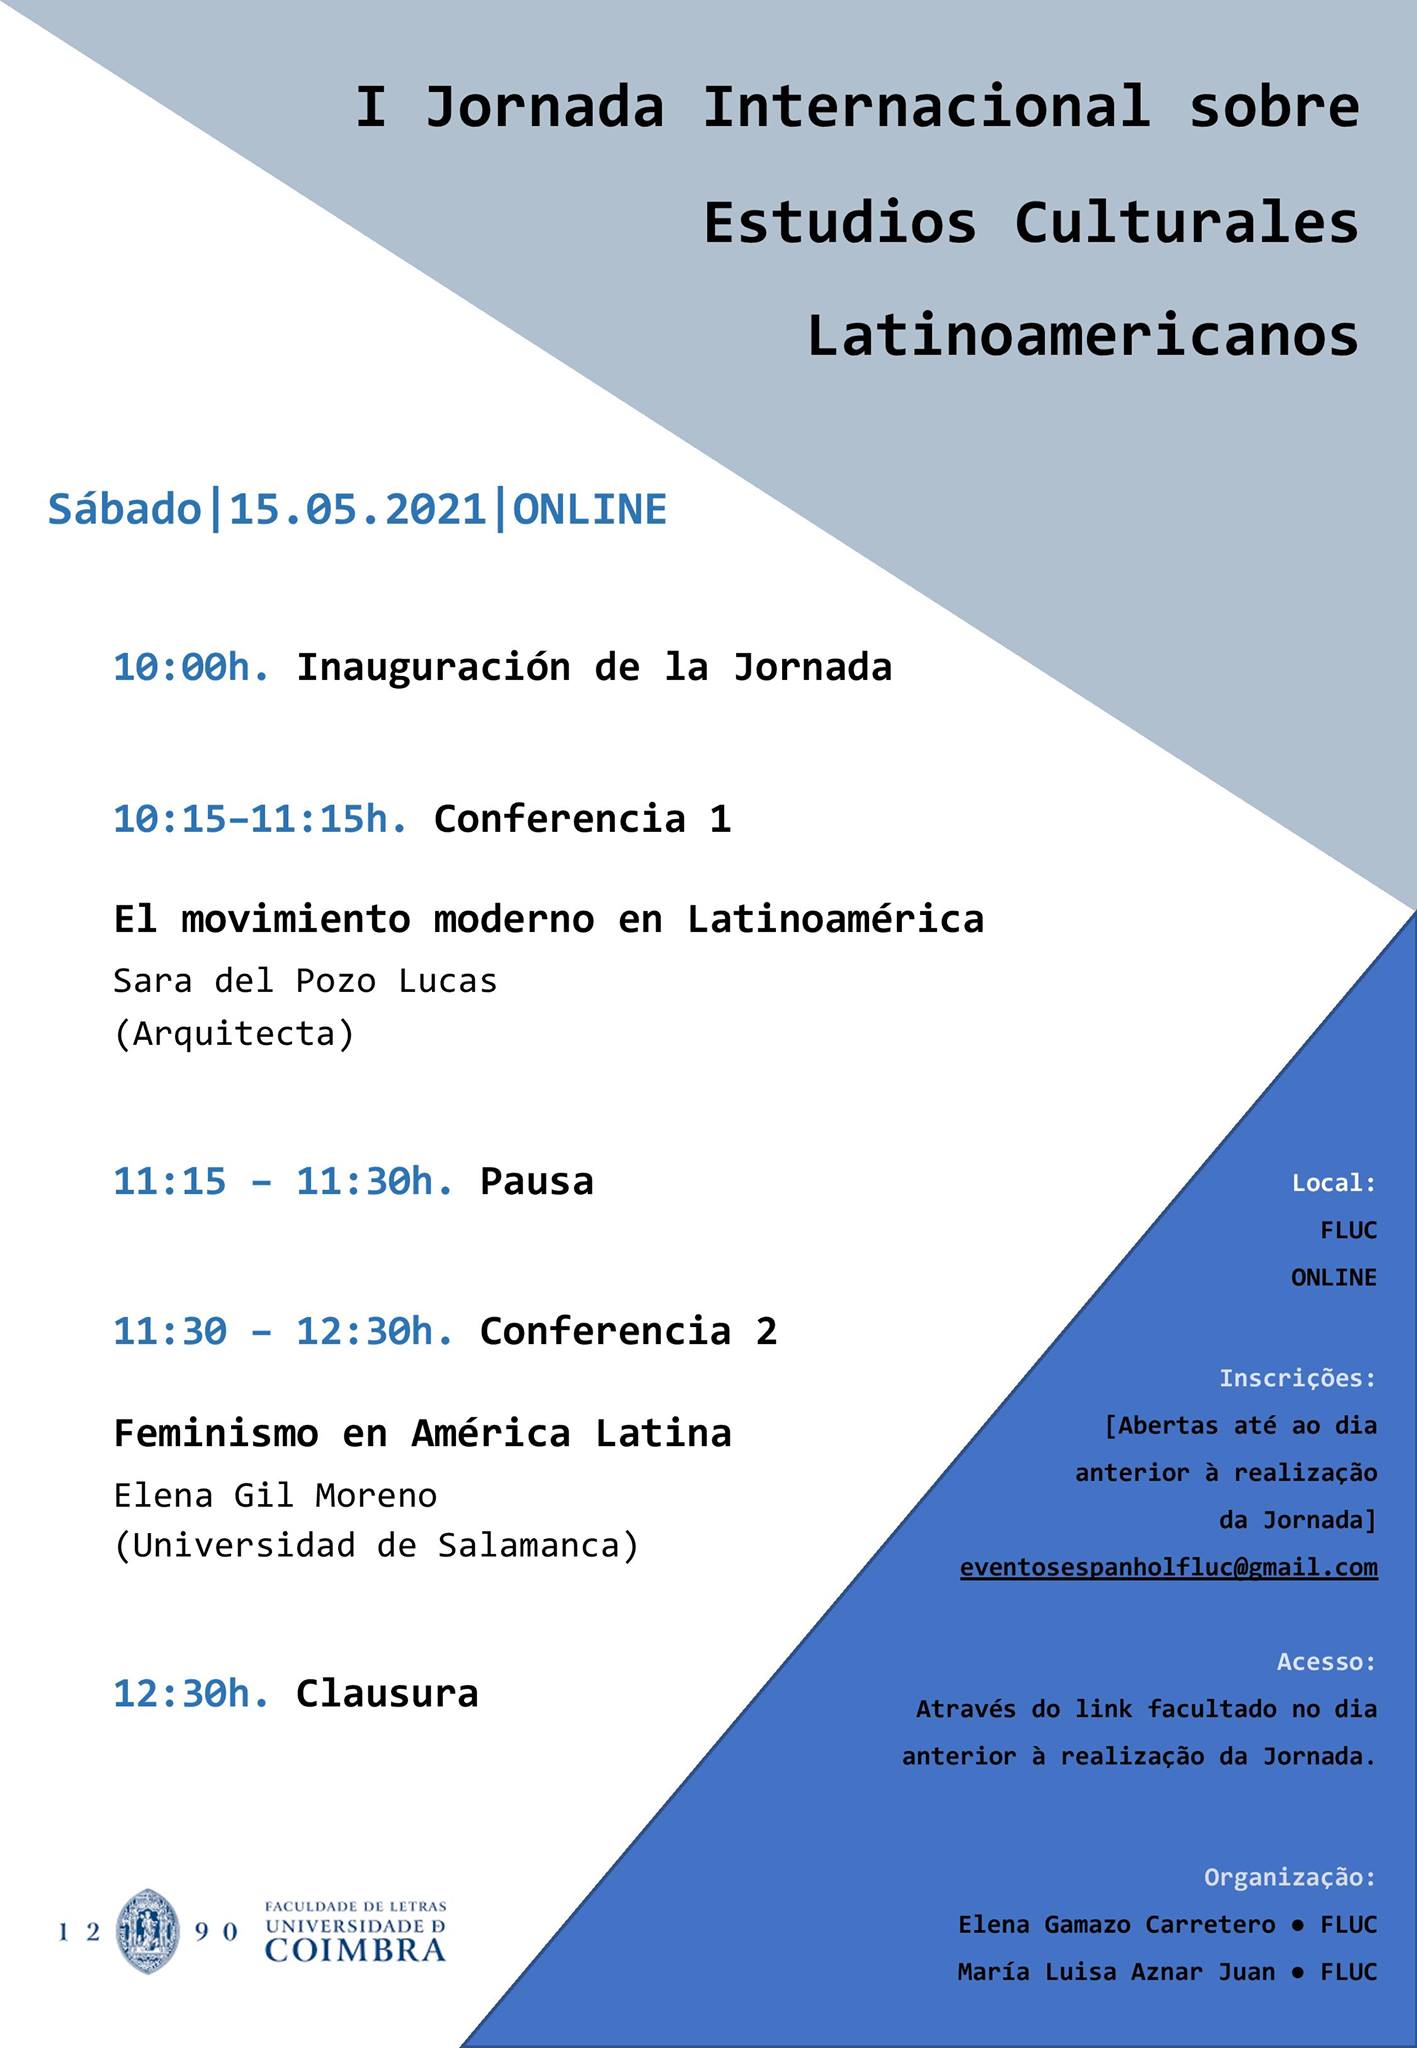 I Jornada Internacional sobre Estudios Culturales Latinoamericanos